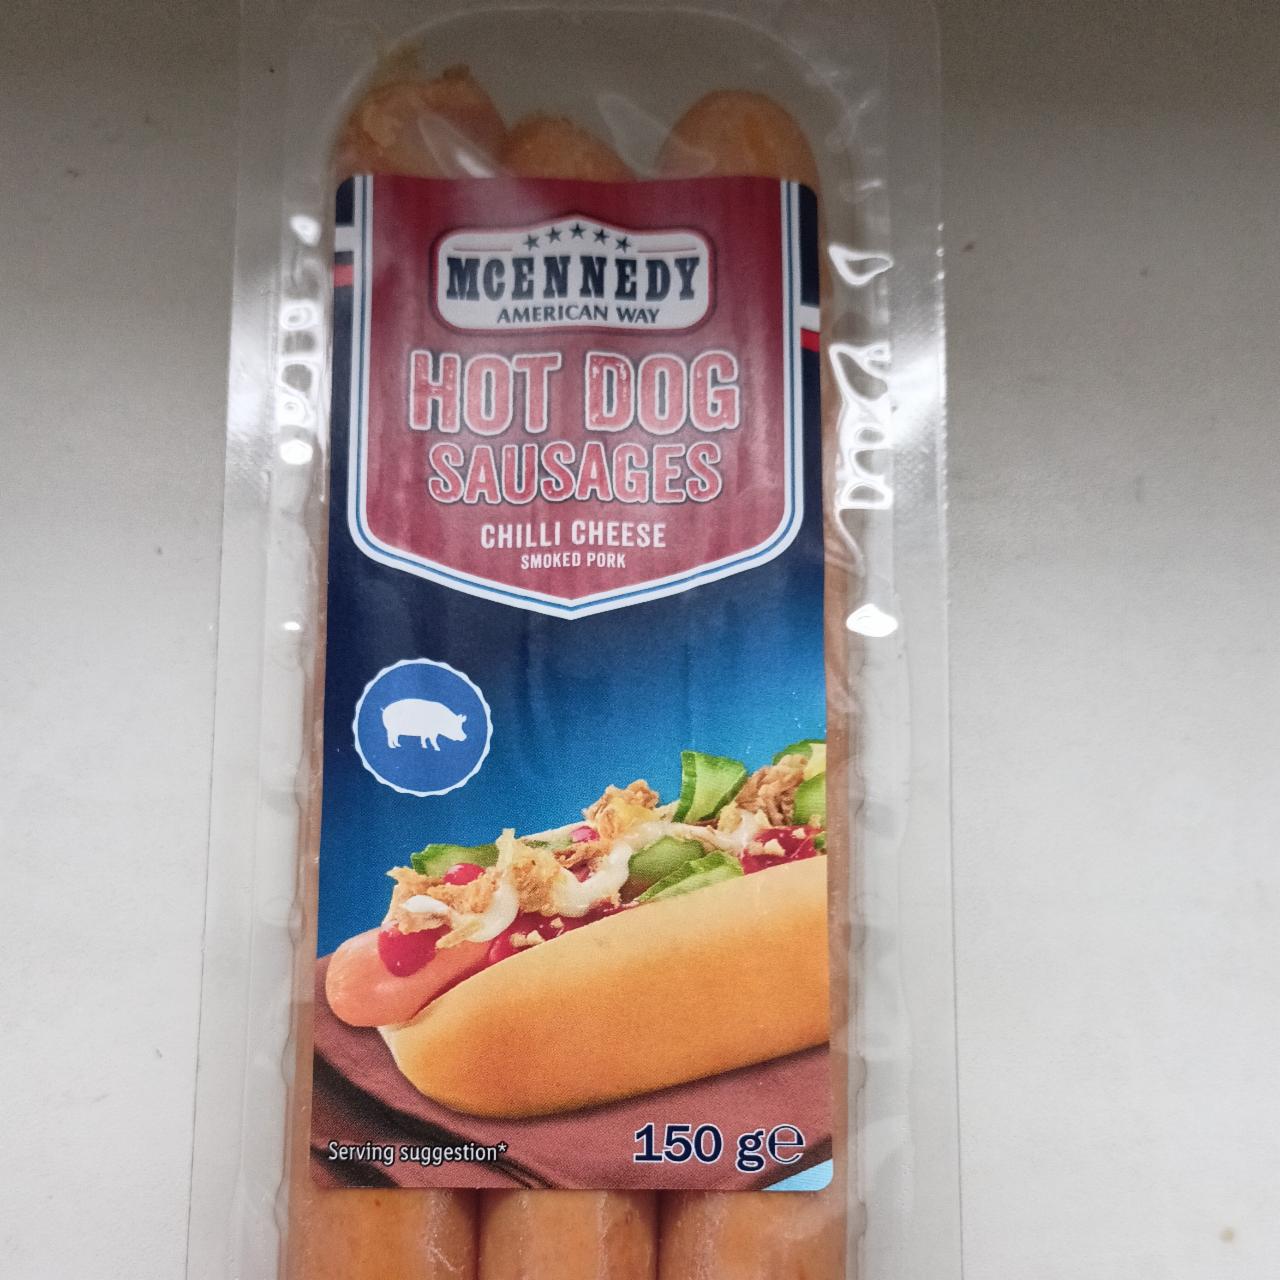 Hot dog Suasages Chilli cheese kalorie, American Way kJ McEnnedy hodnoty - a nutriční